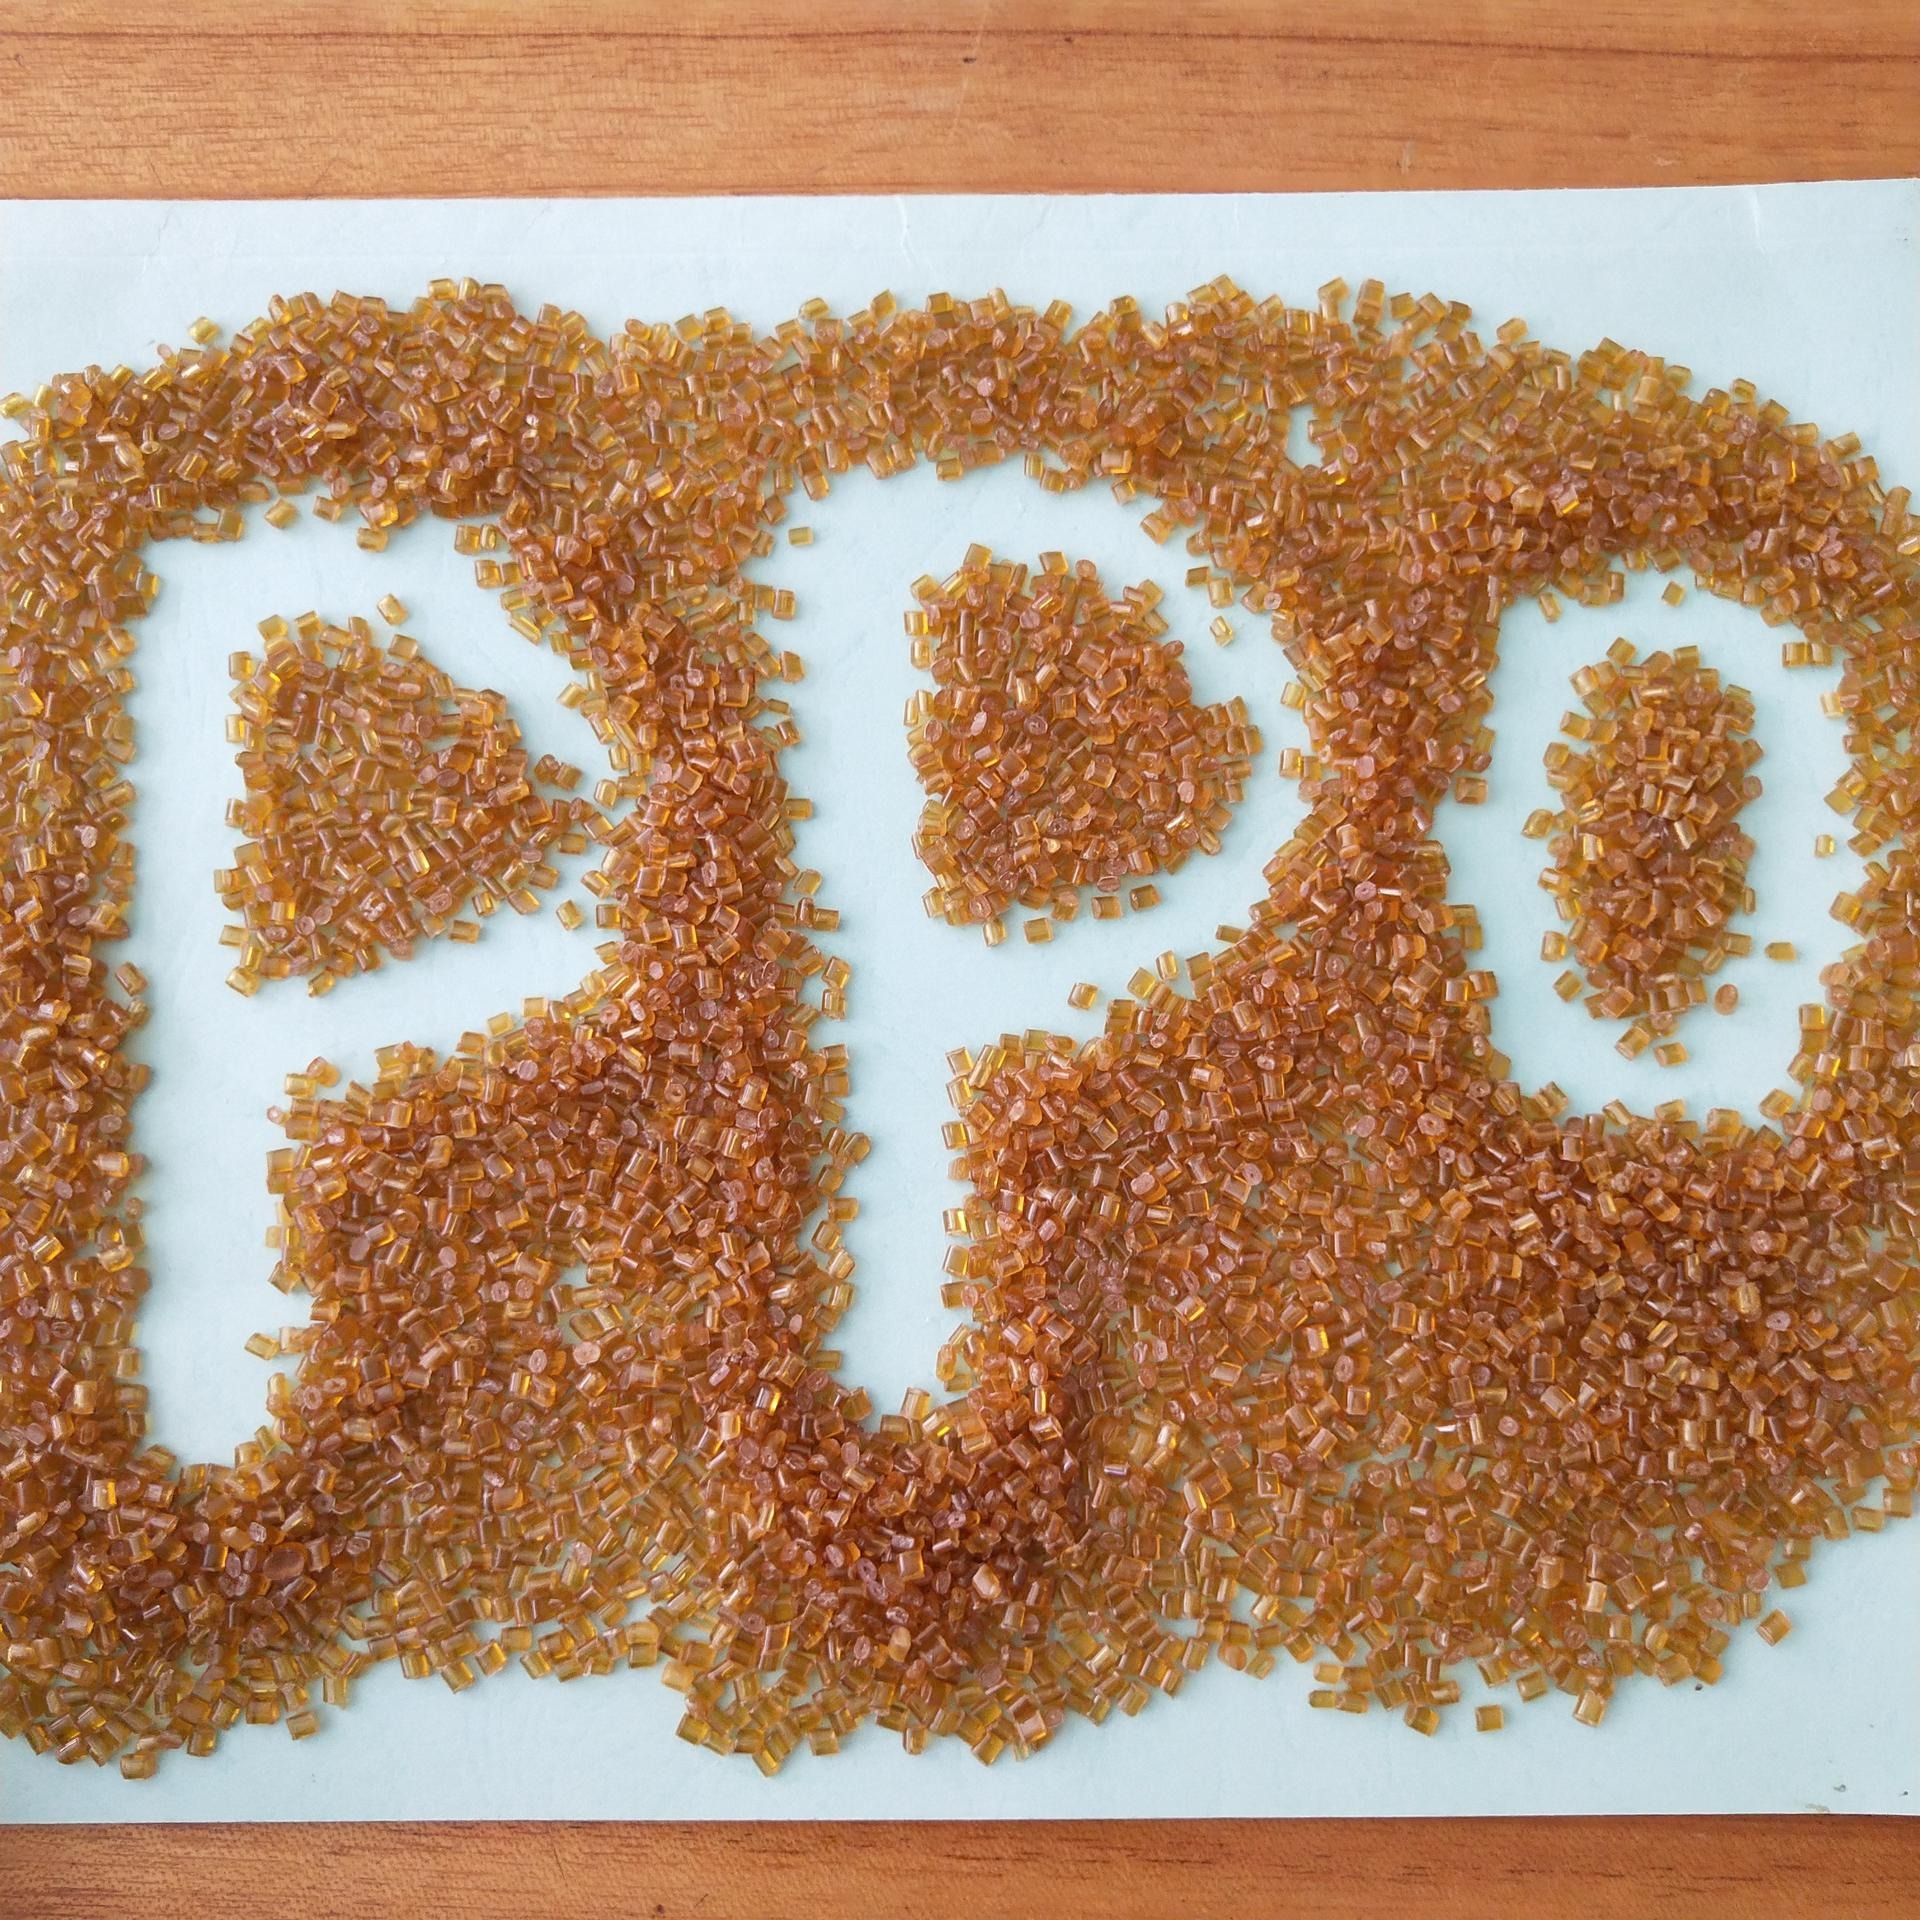 纯PPO树脂    改性PPO素材  聚苯醚纯树脂颗粒   长期现货供应  纯PPE树脂图片